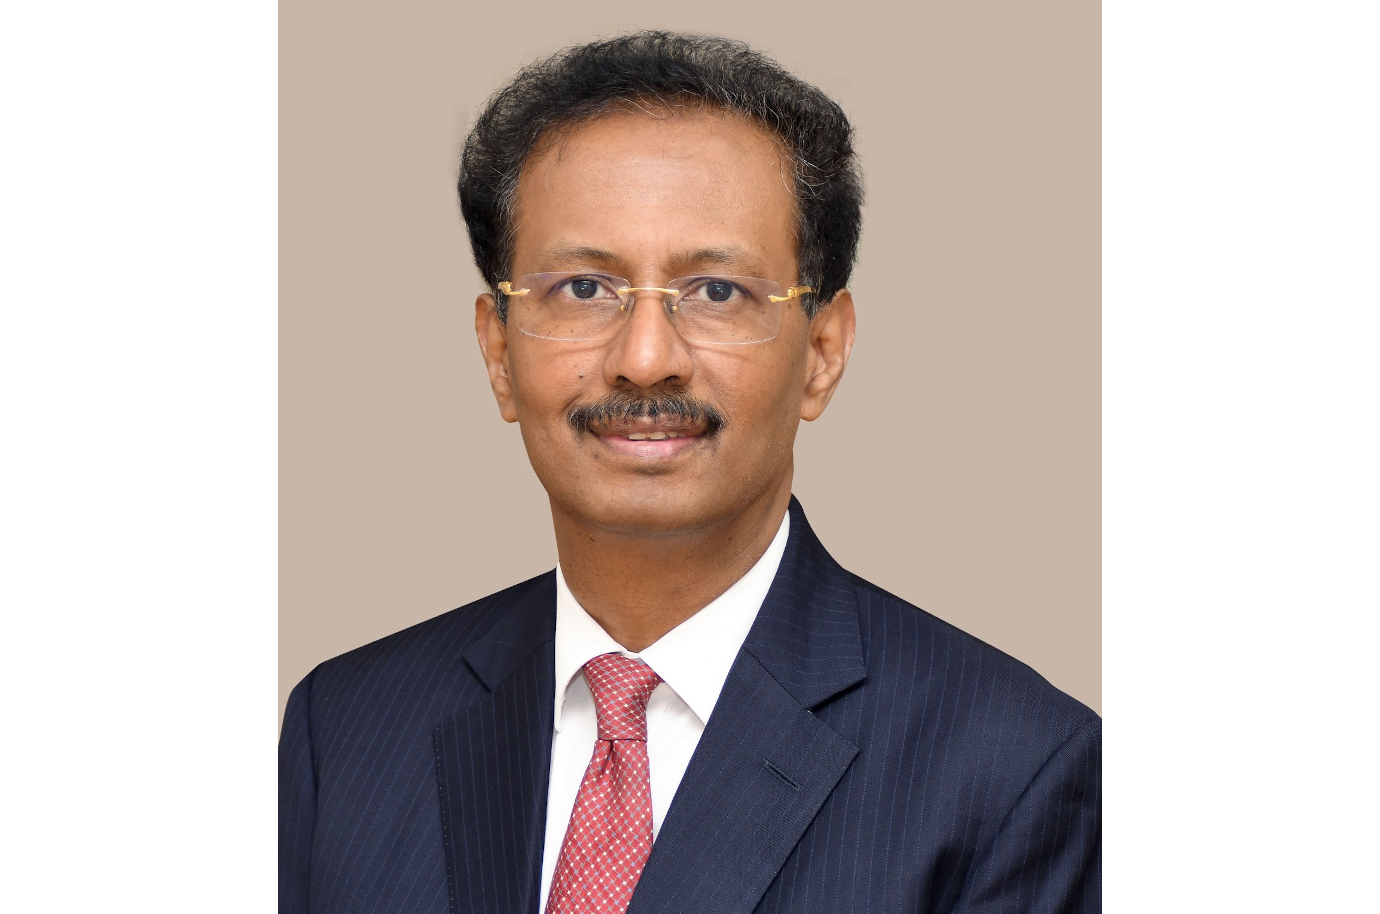 Présentation d’un nouveau membre du conseil d'administration : le professeur Shanmuganathan Rajasekaran